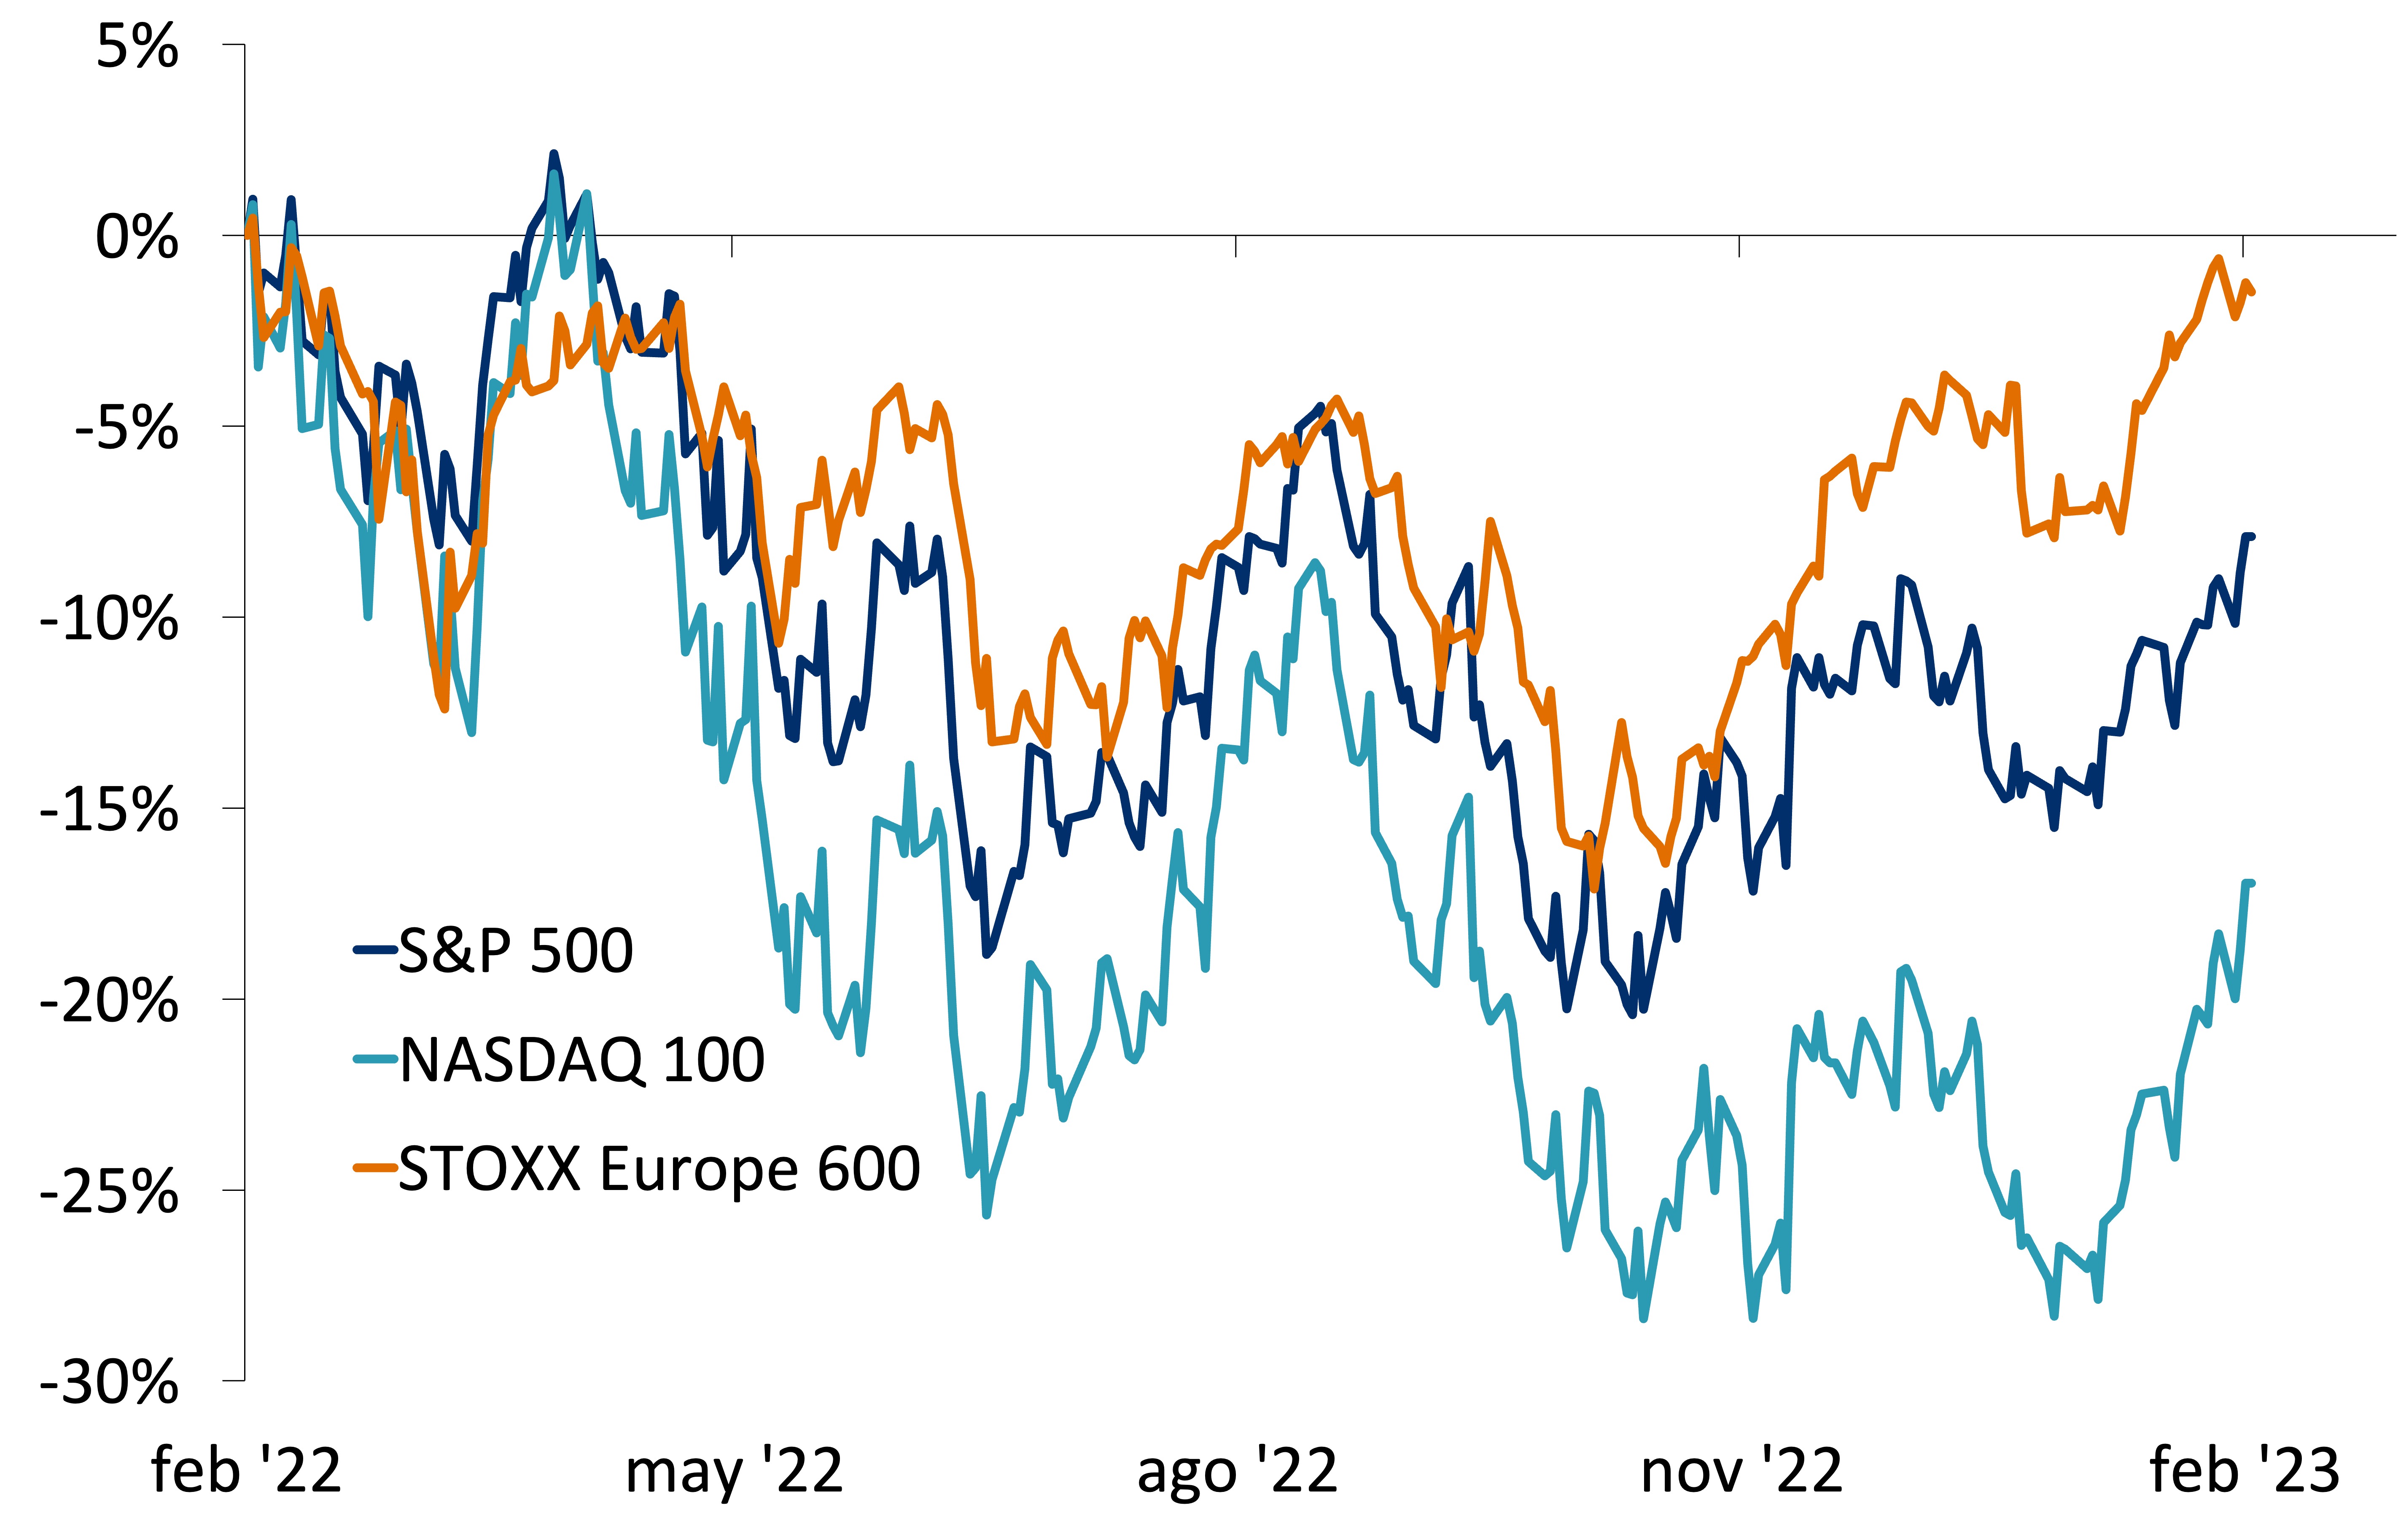 Este gráfico muestra el retorno del precio de los índices S&P 500, NASDAQ 100 y STOXX Europe 600, entre febrero de 2022 y el 2 de febrero de 2023. Los índices muestran trayectorias similares, pero el STOXX Europe 600 ha sido superior.